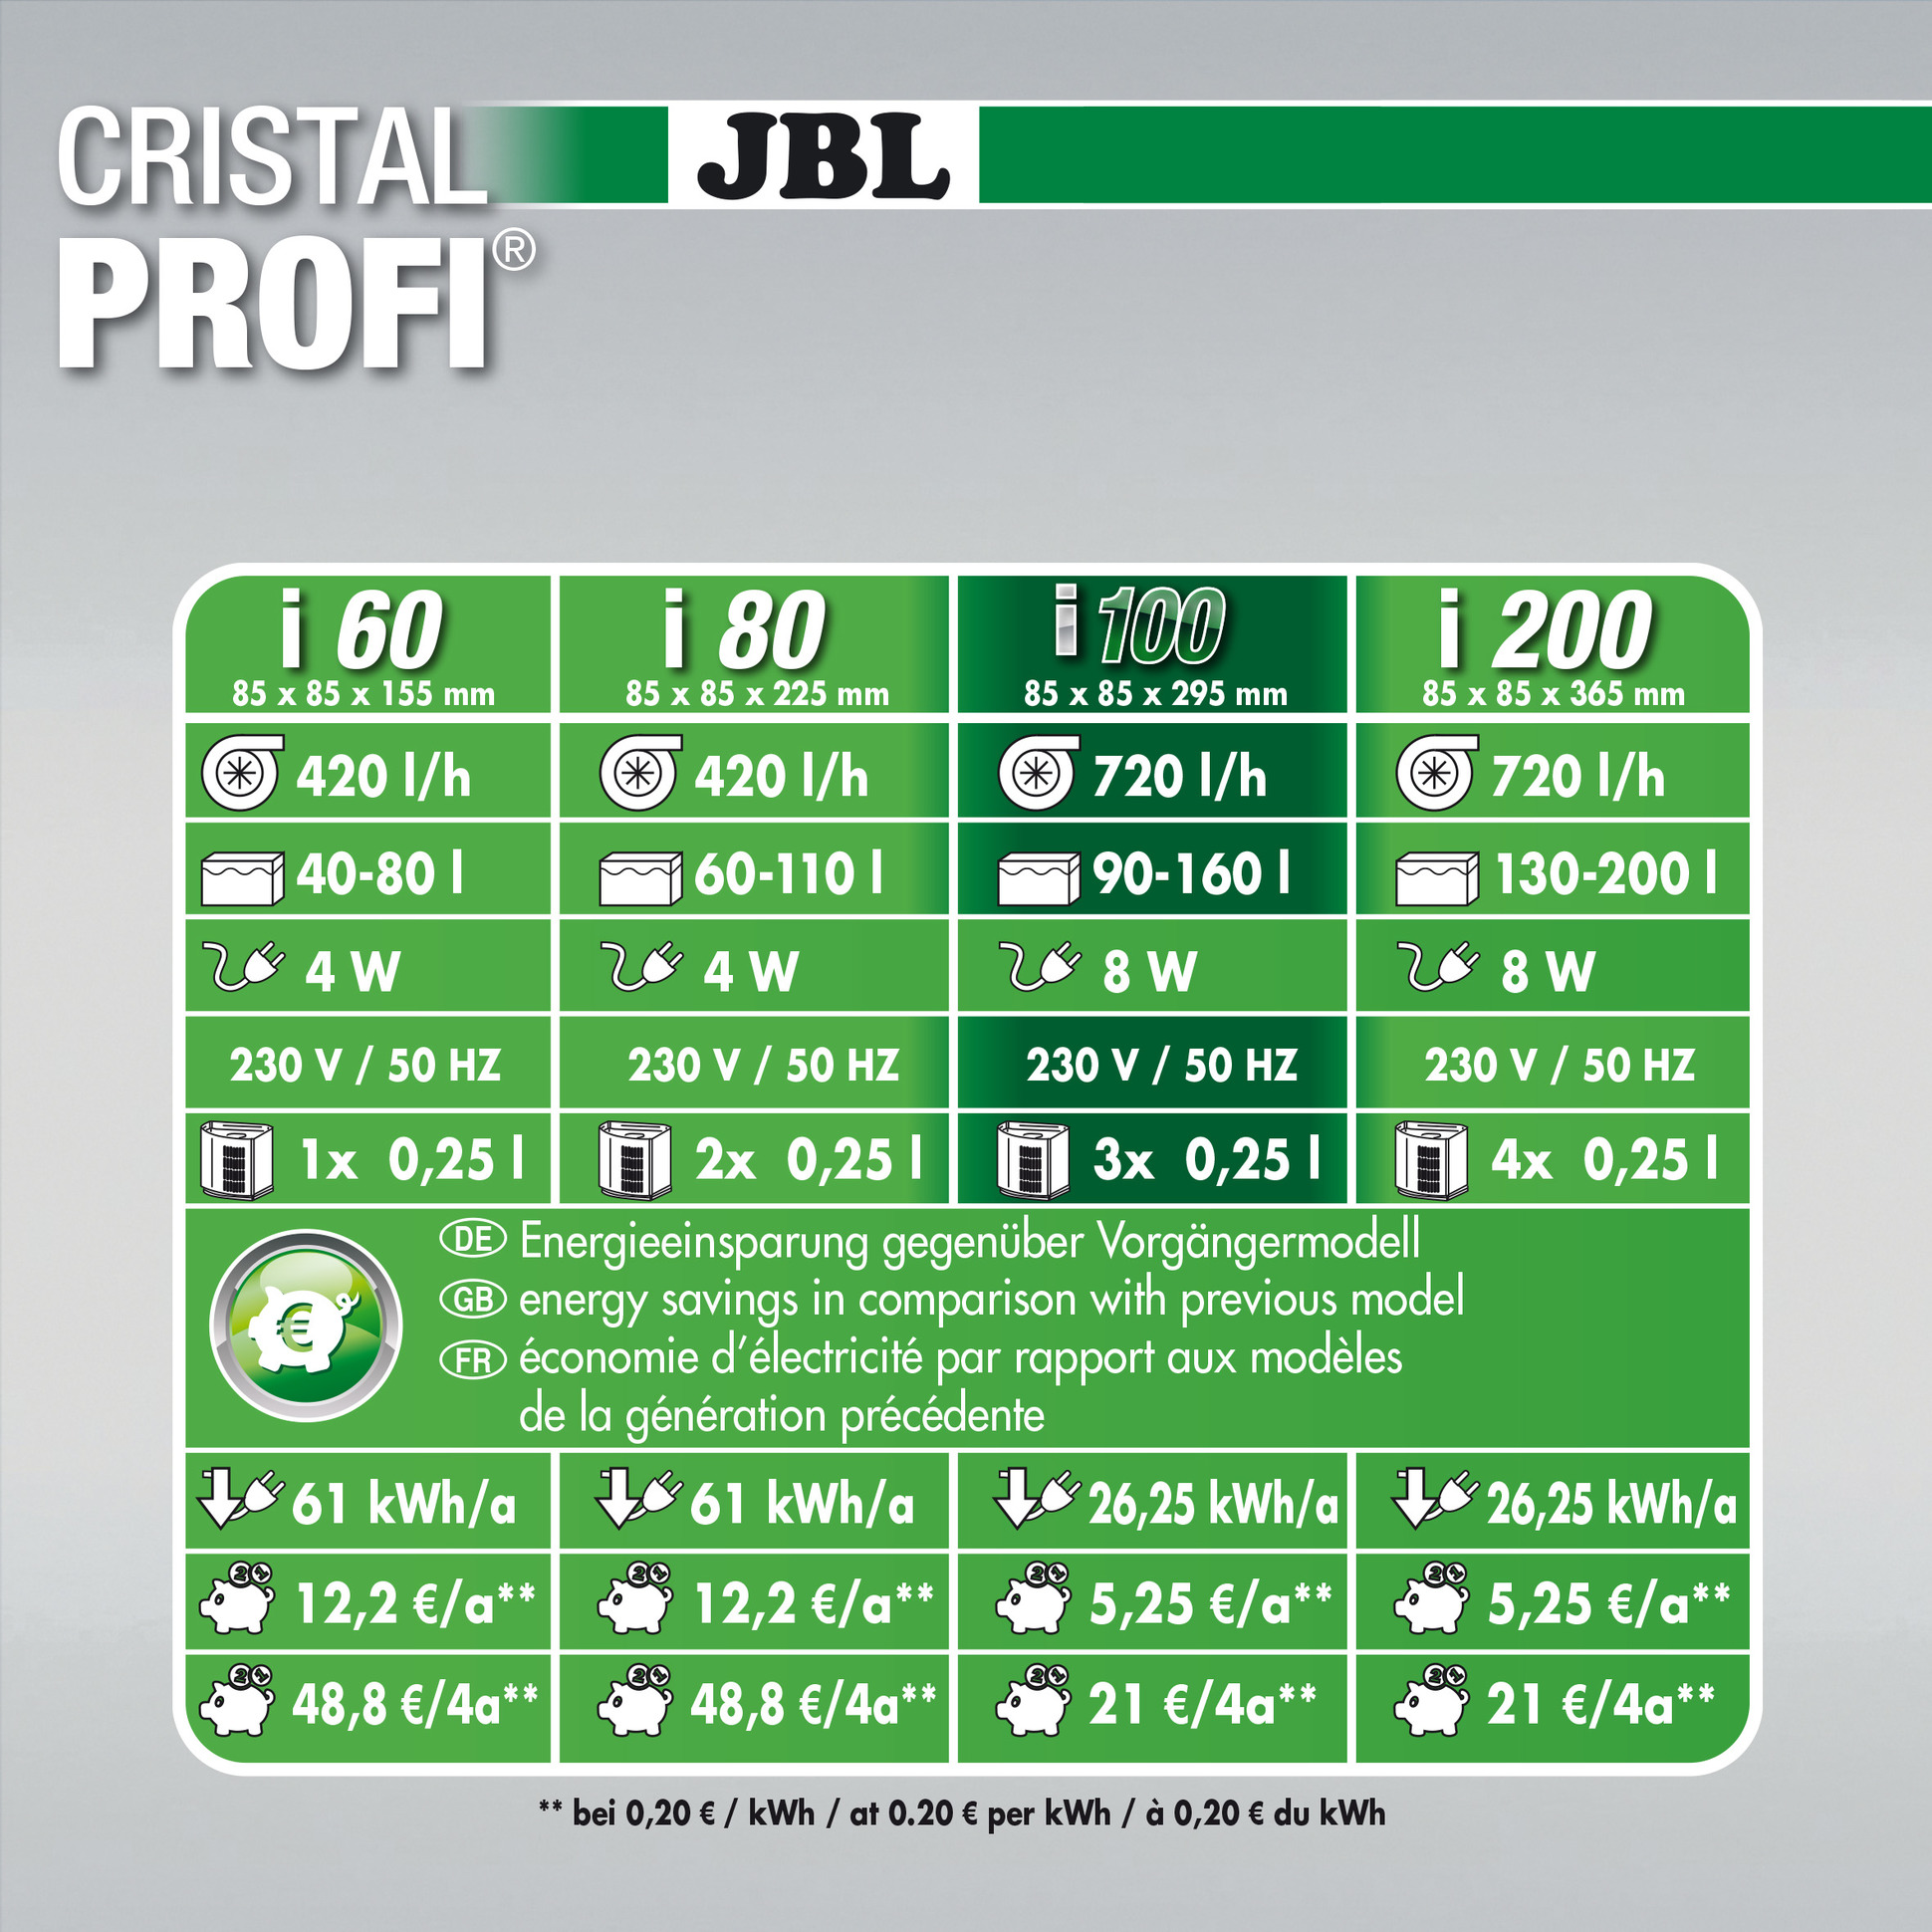 JBL CristalProfi i100 greenline4